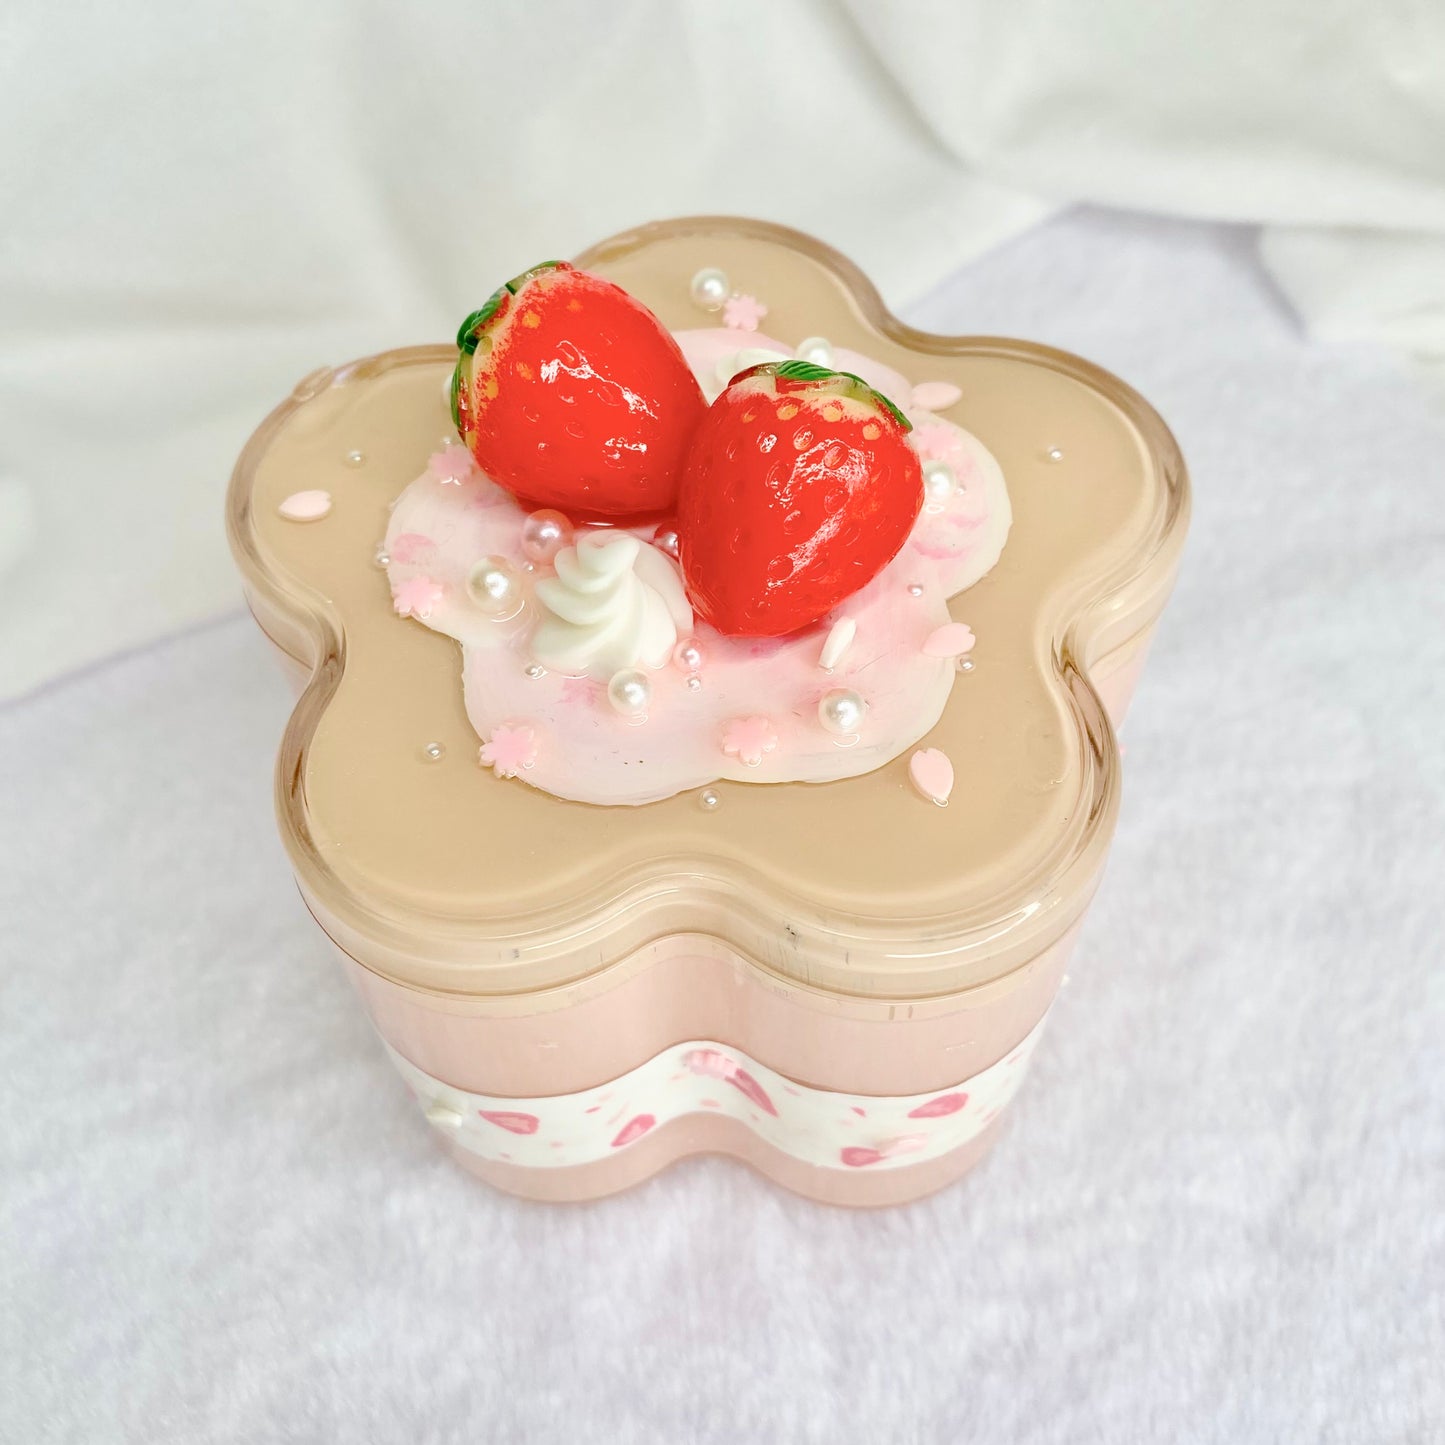 Strawberry short cake - Trinket box